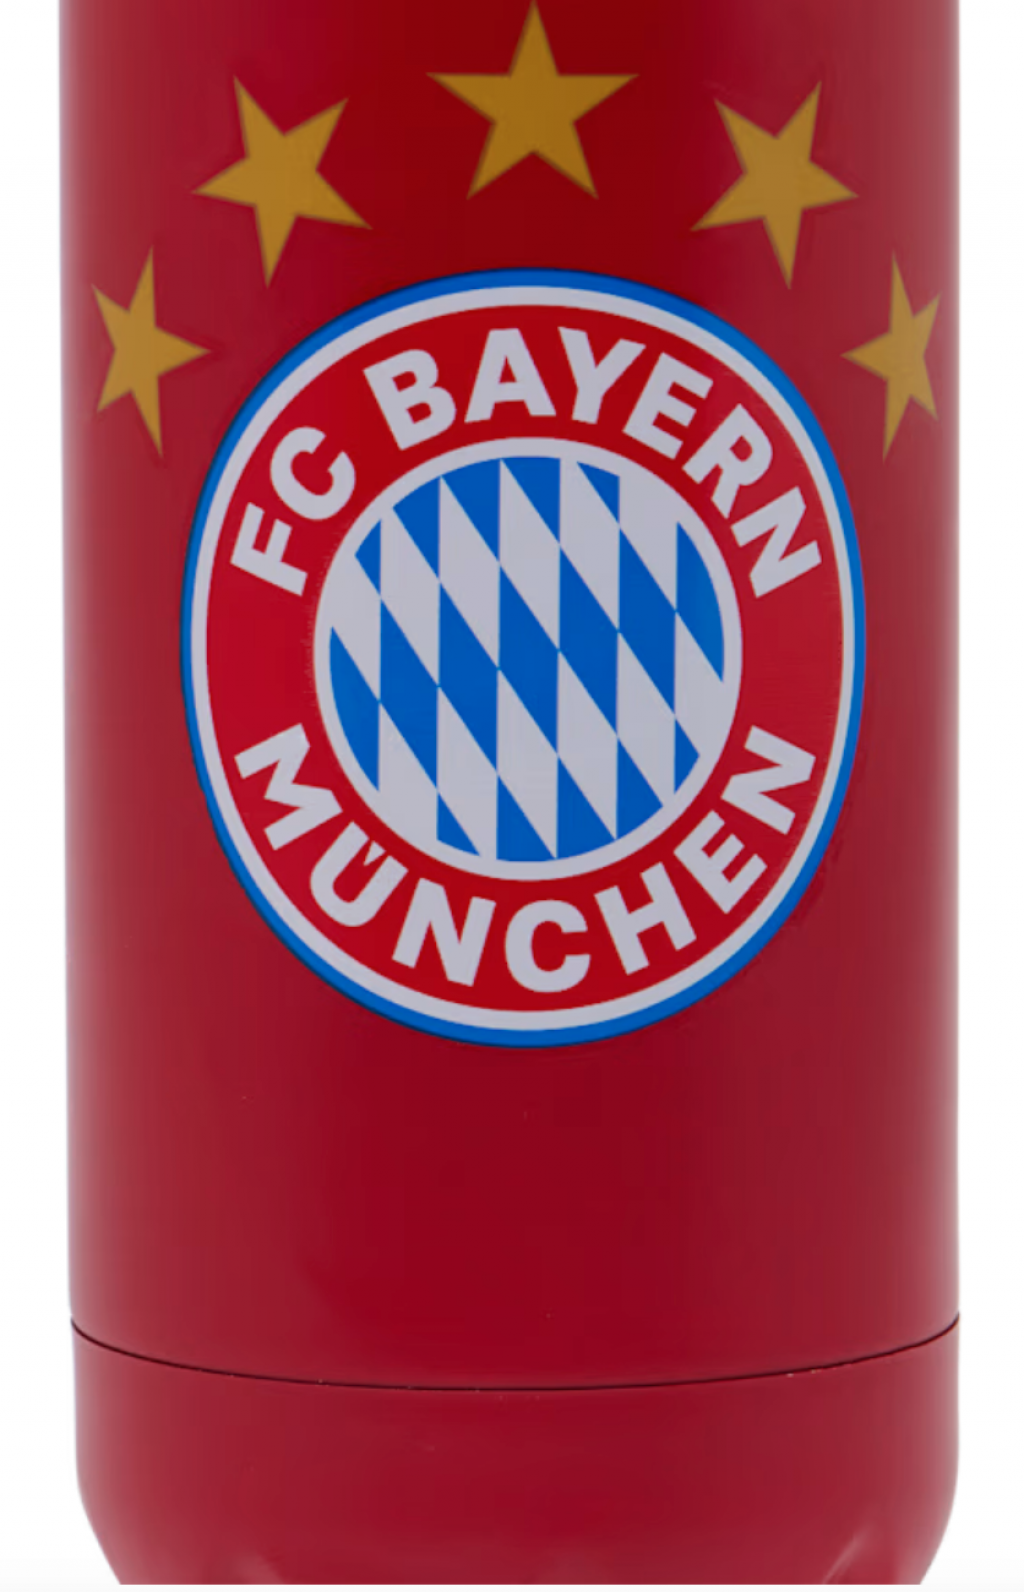 Hliníková fľaša na pitie s logom 5 hviezdičiek FC Bayern München, červený, 0,5l